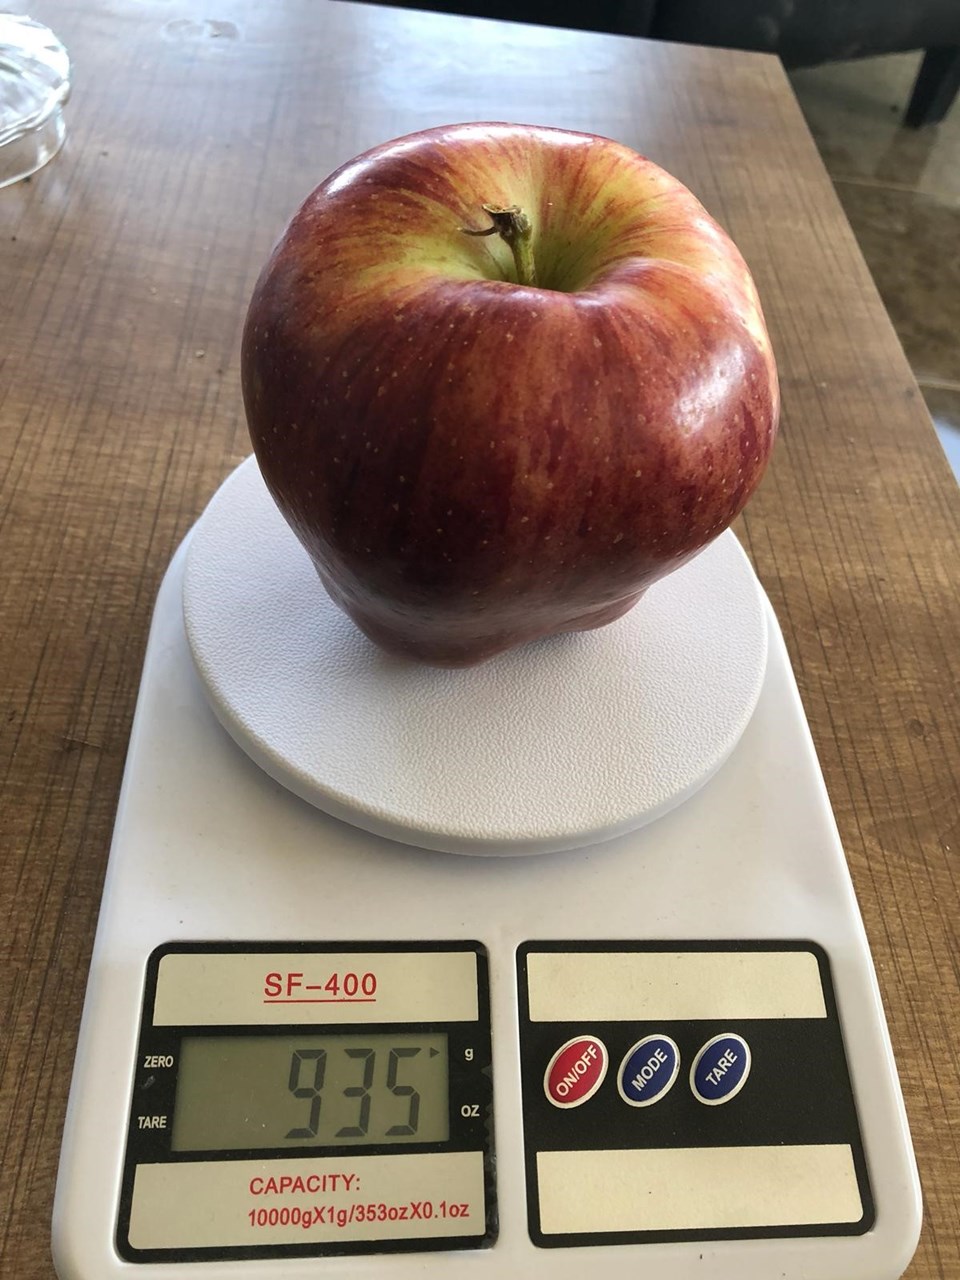 935 gramlık elma görenleri şaşırtıyor - 1